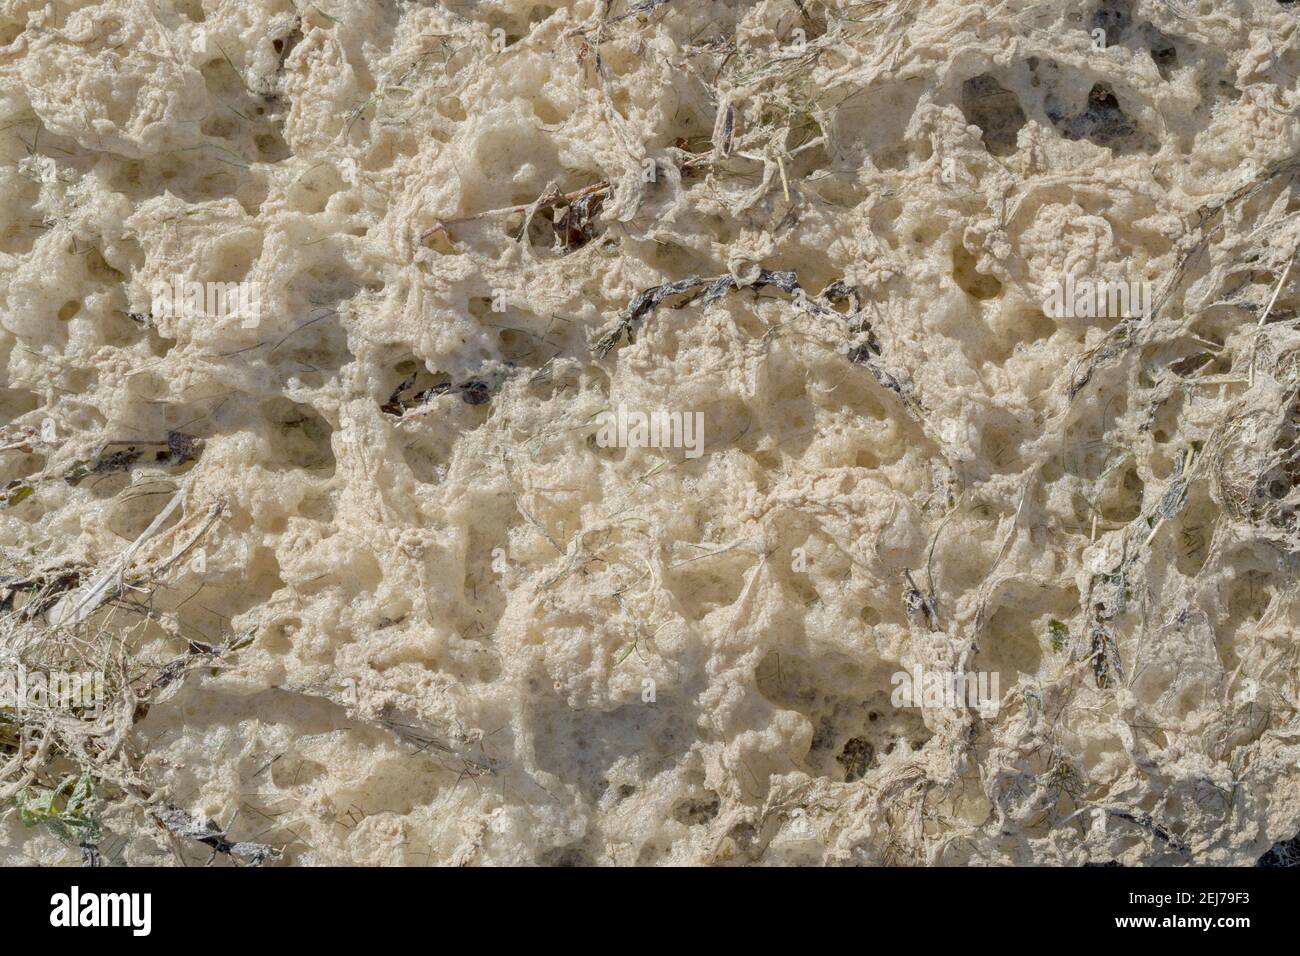 Ein Fragment der Küste in seichtem Wasser, bedeckt mit weißem und cremefarbenem Meeresschaum, gemischt mit Gras und Algen, die am Ufer aufgespült wurden. Natürliche abstrakte Ba Stockfoto